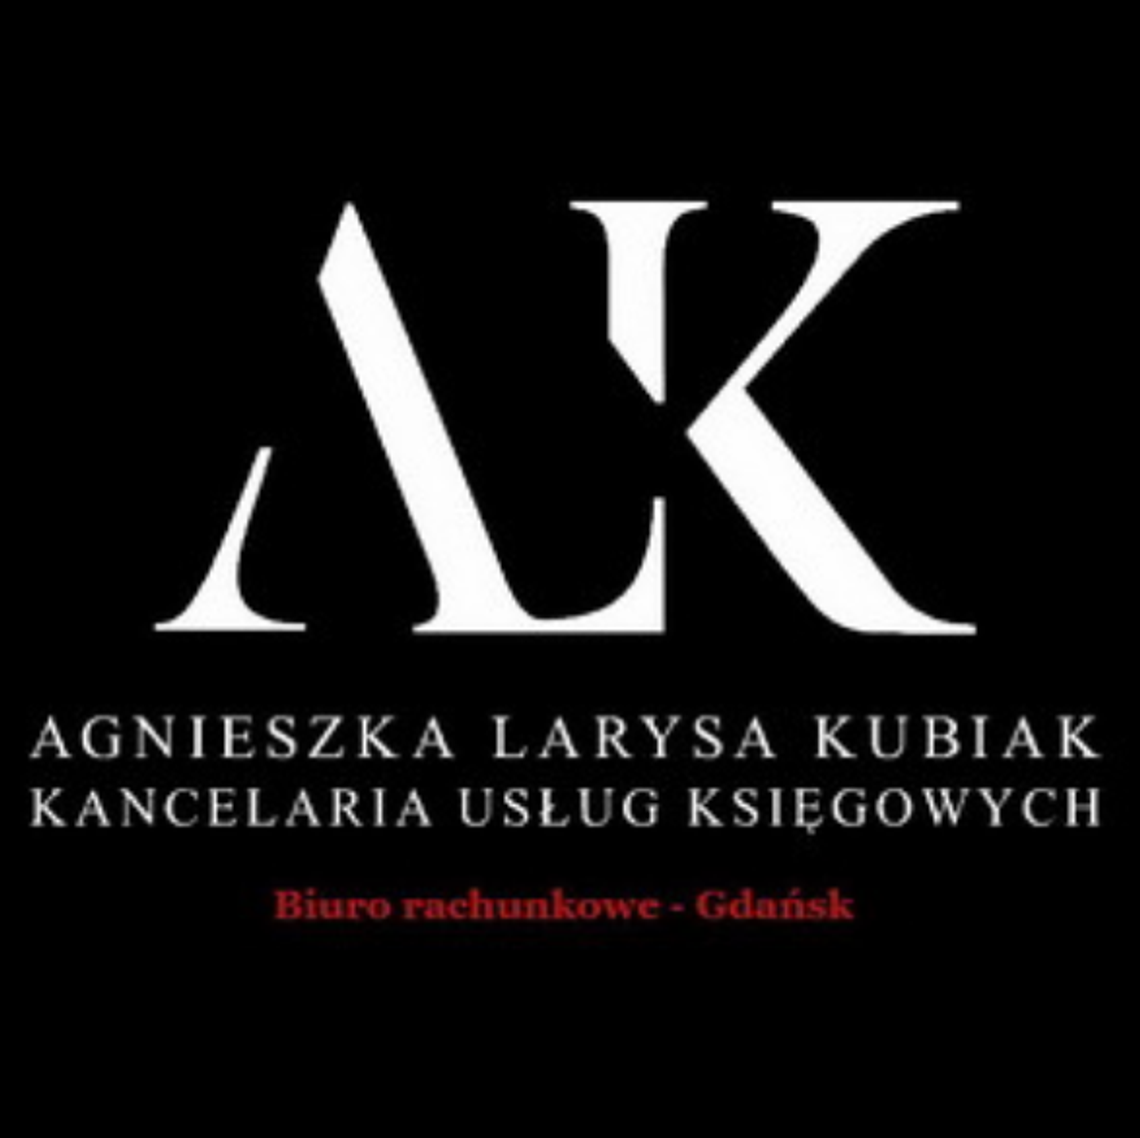 Biuro rachunkowe Gdańsk - Kancelaria Usług Podatkowych - Agnieszka Larysa Kubiak